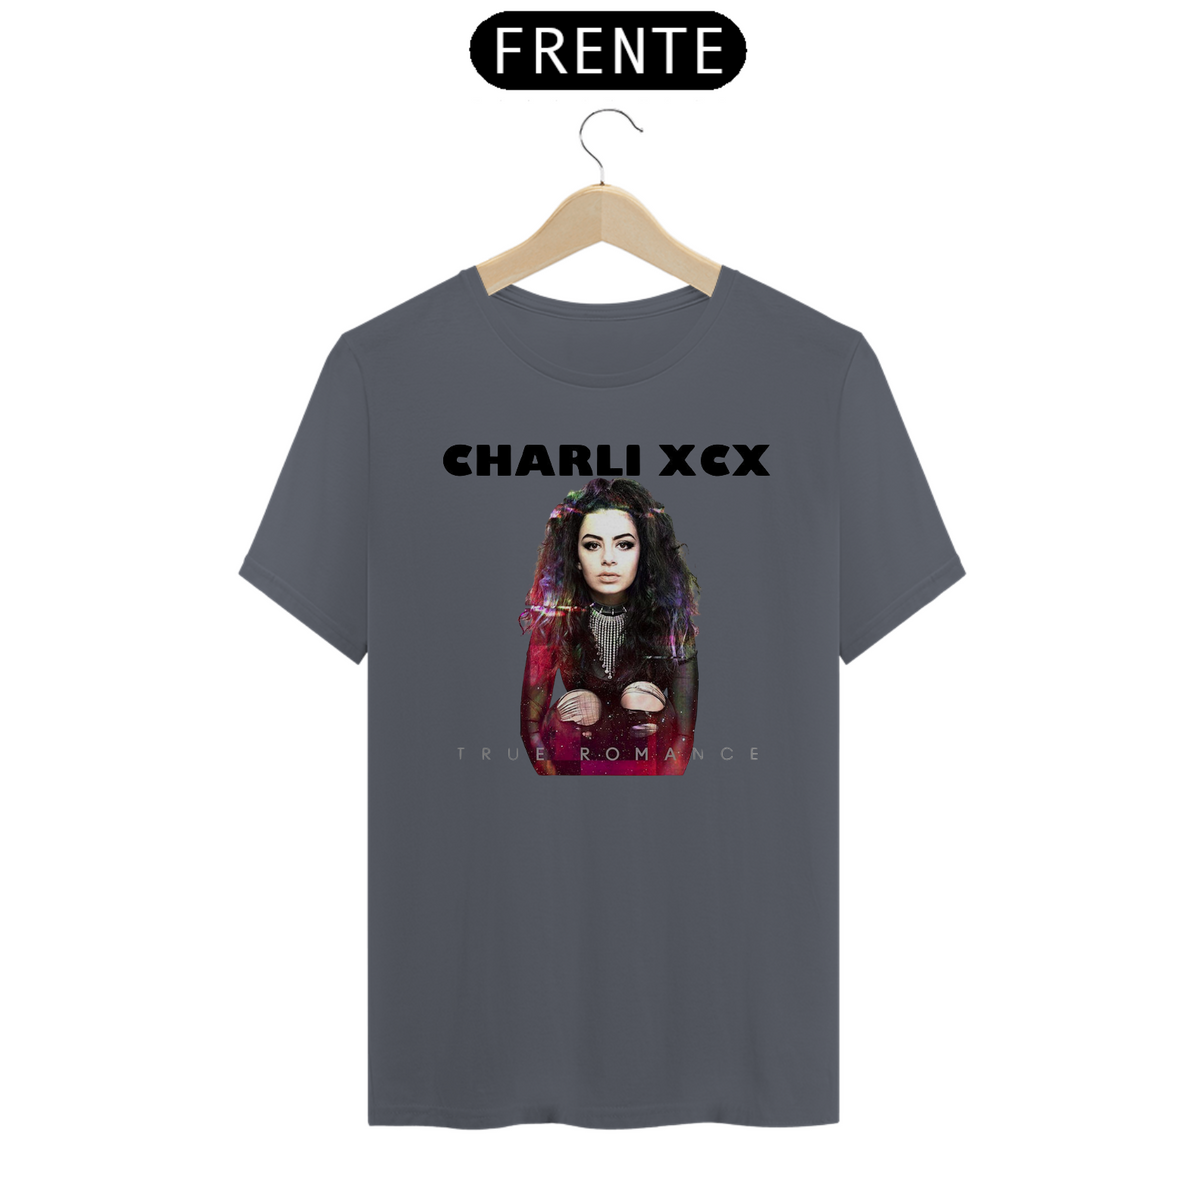 Nome do produto: Charli XCX